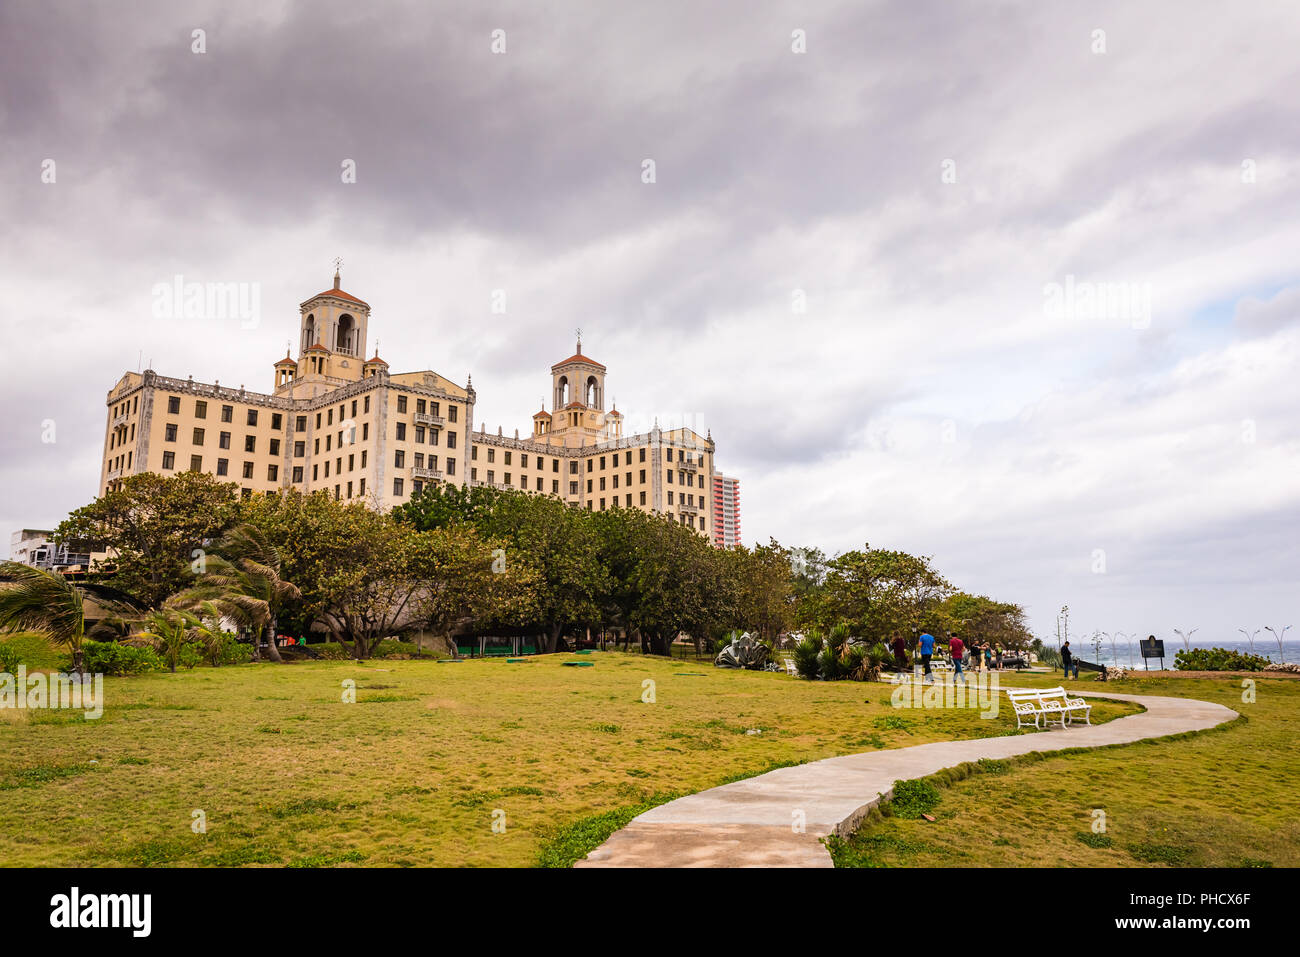 La Havane, Cuba, 21 mars 2016 / : Hôtel historique avec des détails art déco datant de 1930, célèbre pour son passé ganster. Banque D'Images